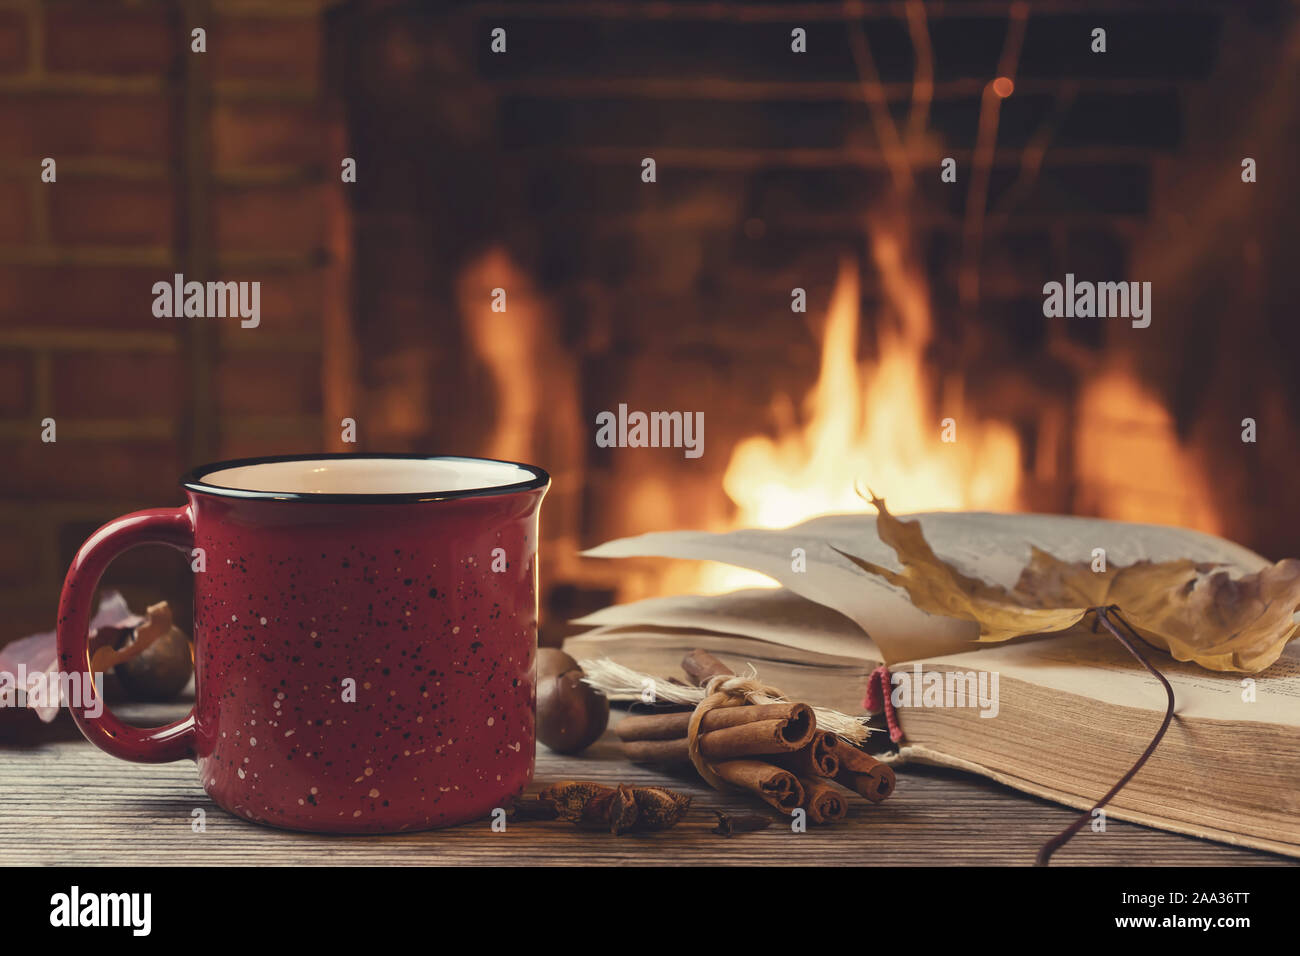 Rot Tasse mit heißem Tee und ein offenes Buch vor einem brennenden Kamin, Komfort, Entspannung und Wärme des Herdes Konzept. Stockfoto